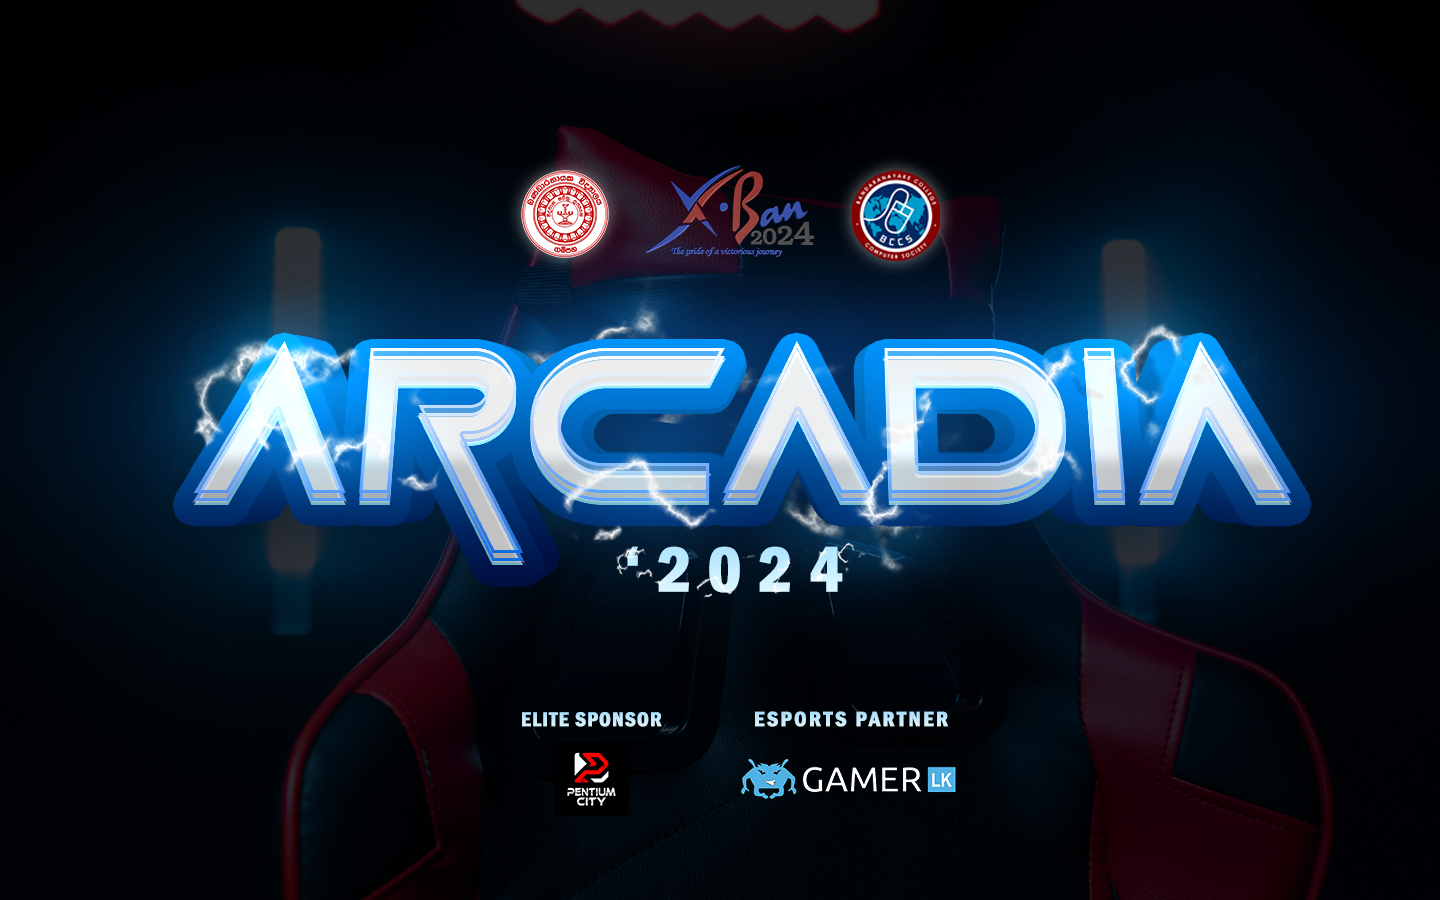 Arcadia ‘24